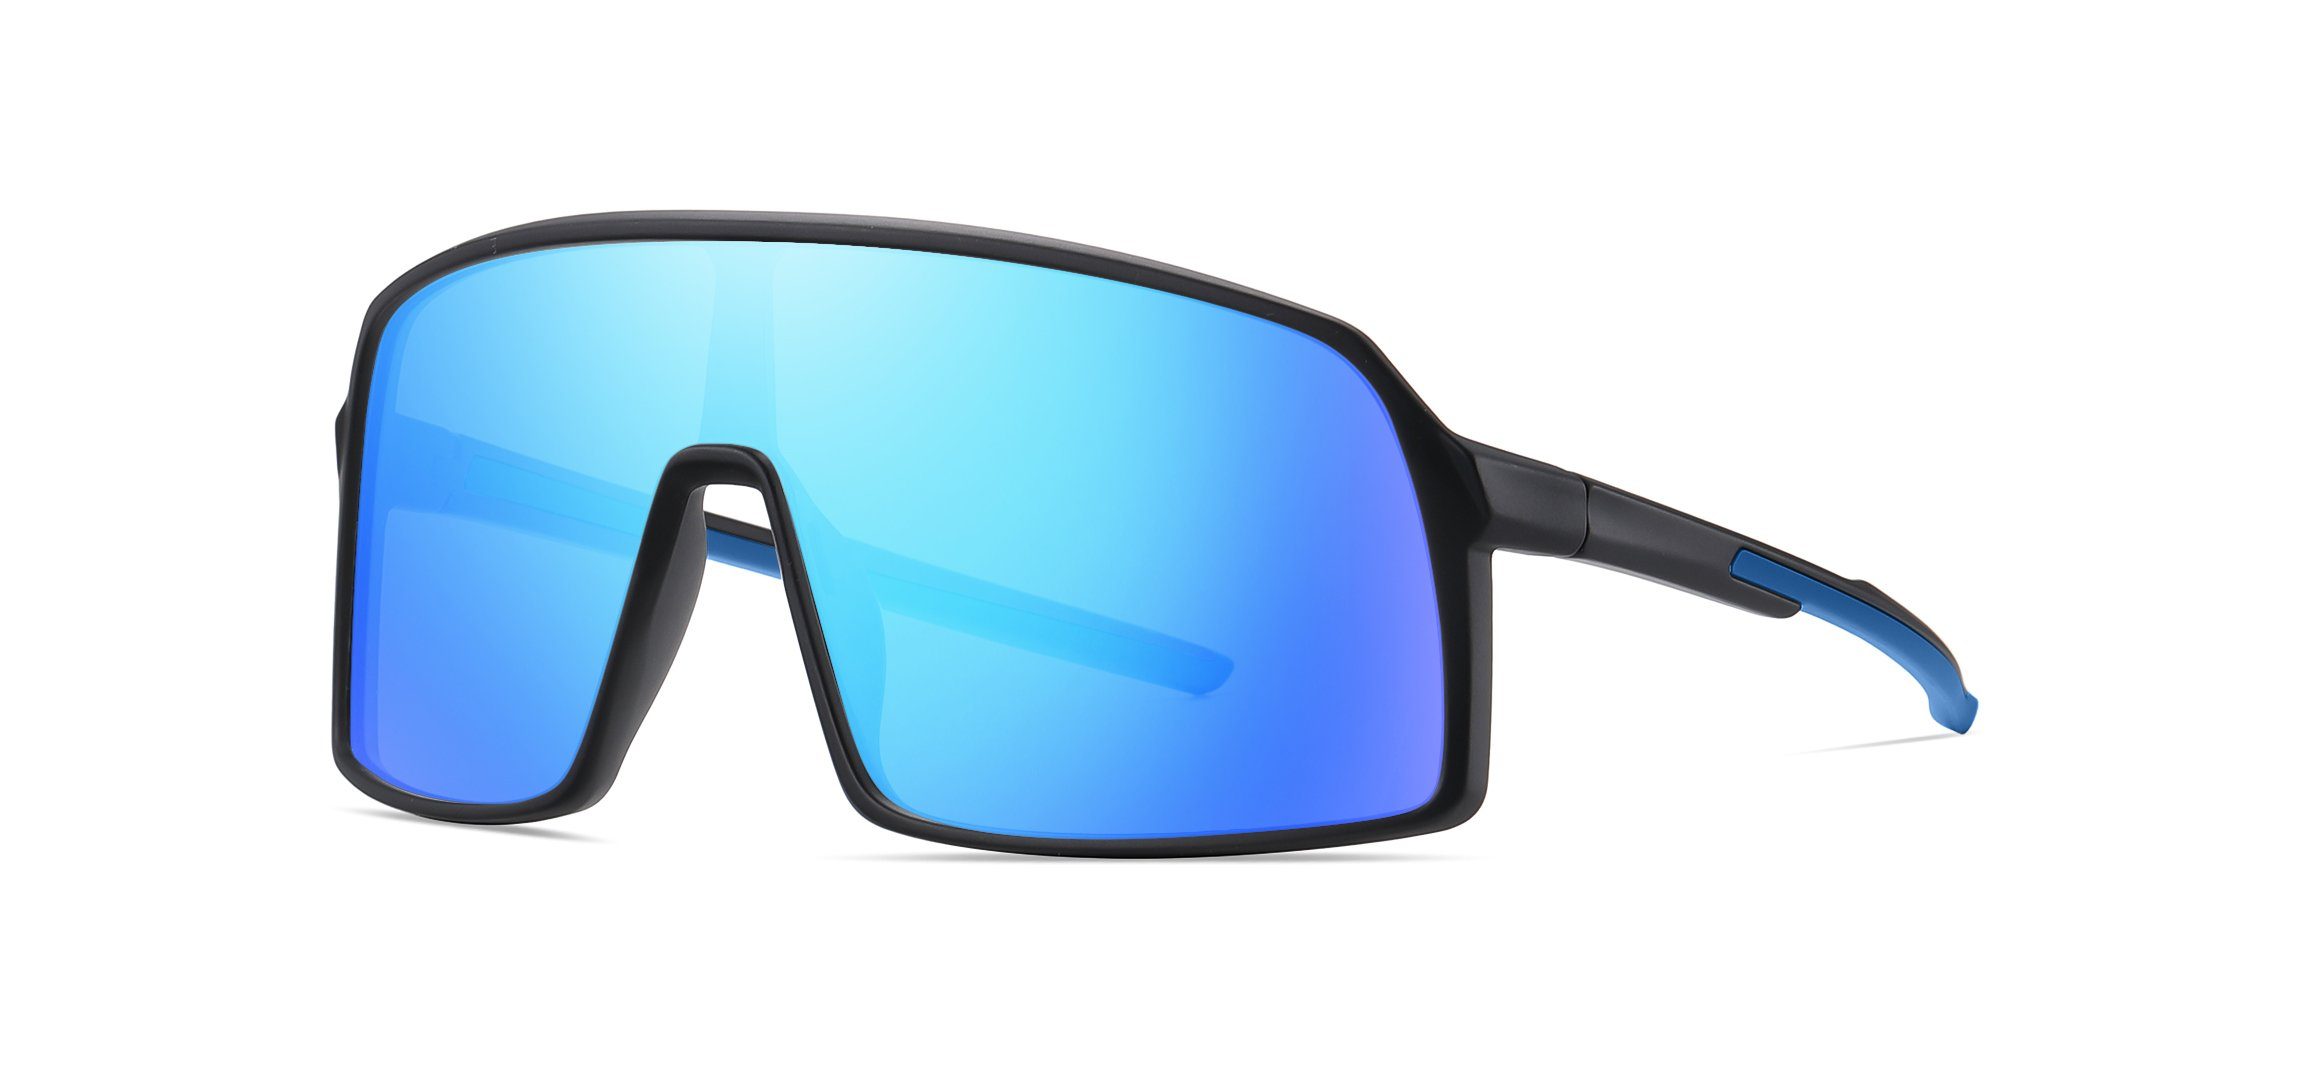 PACIEA Fahrradbrille Fahrradbrille Sportbrille Damen Herren Unisex polarisiert leicht schwarzblau